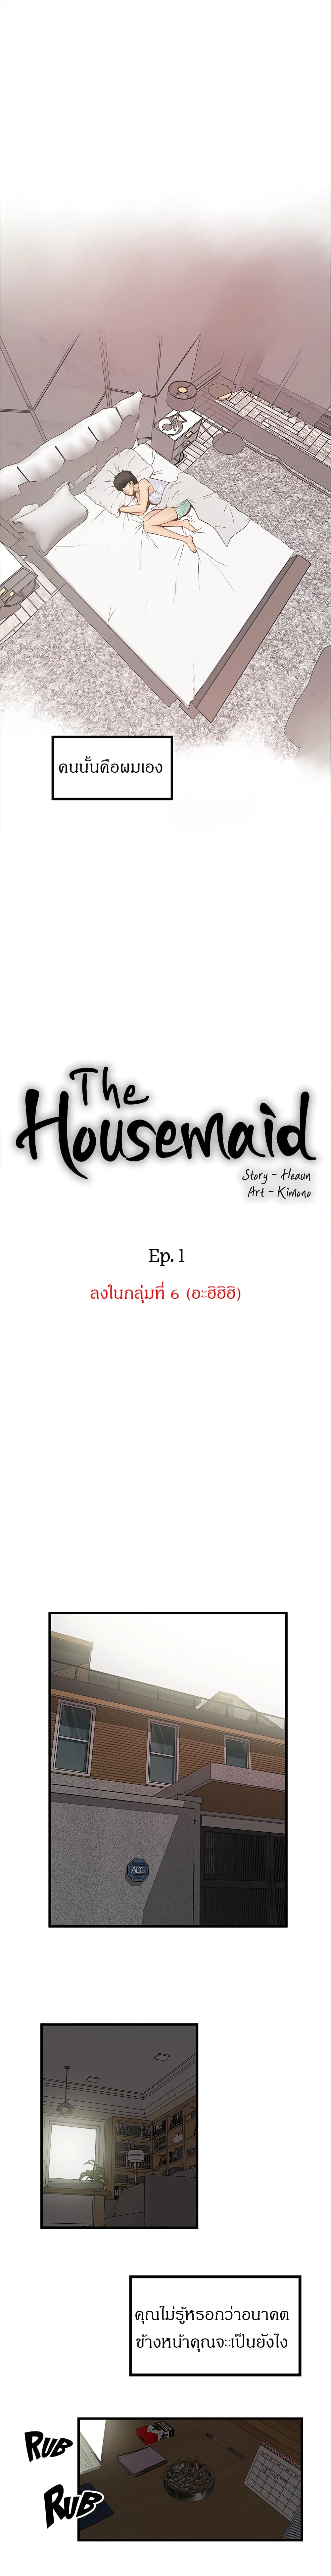 House Maid 1 (7)